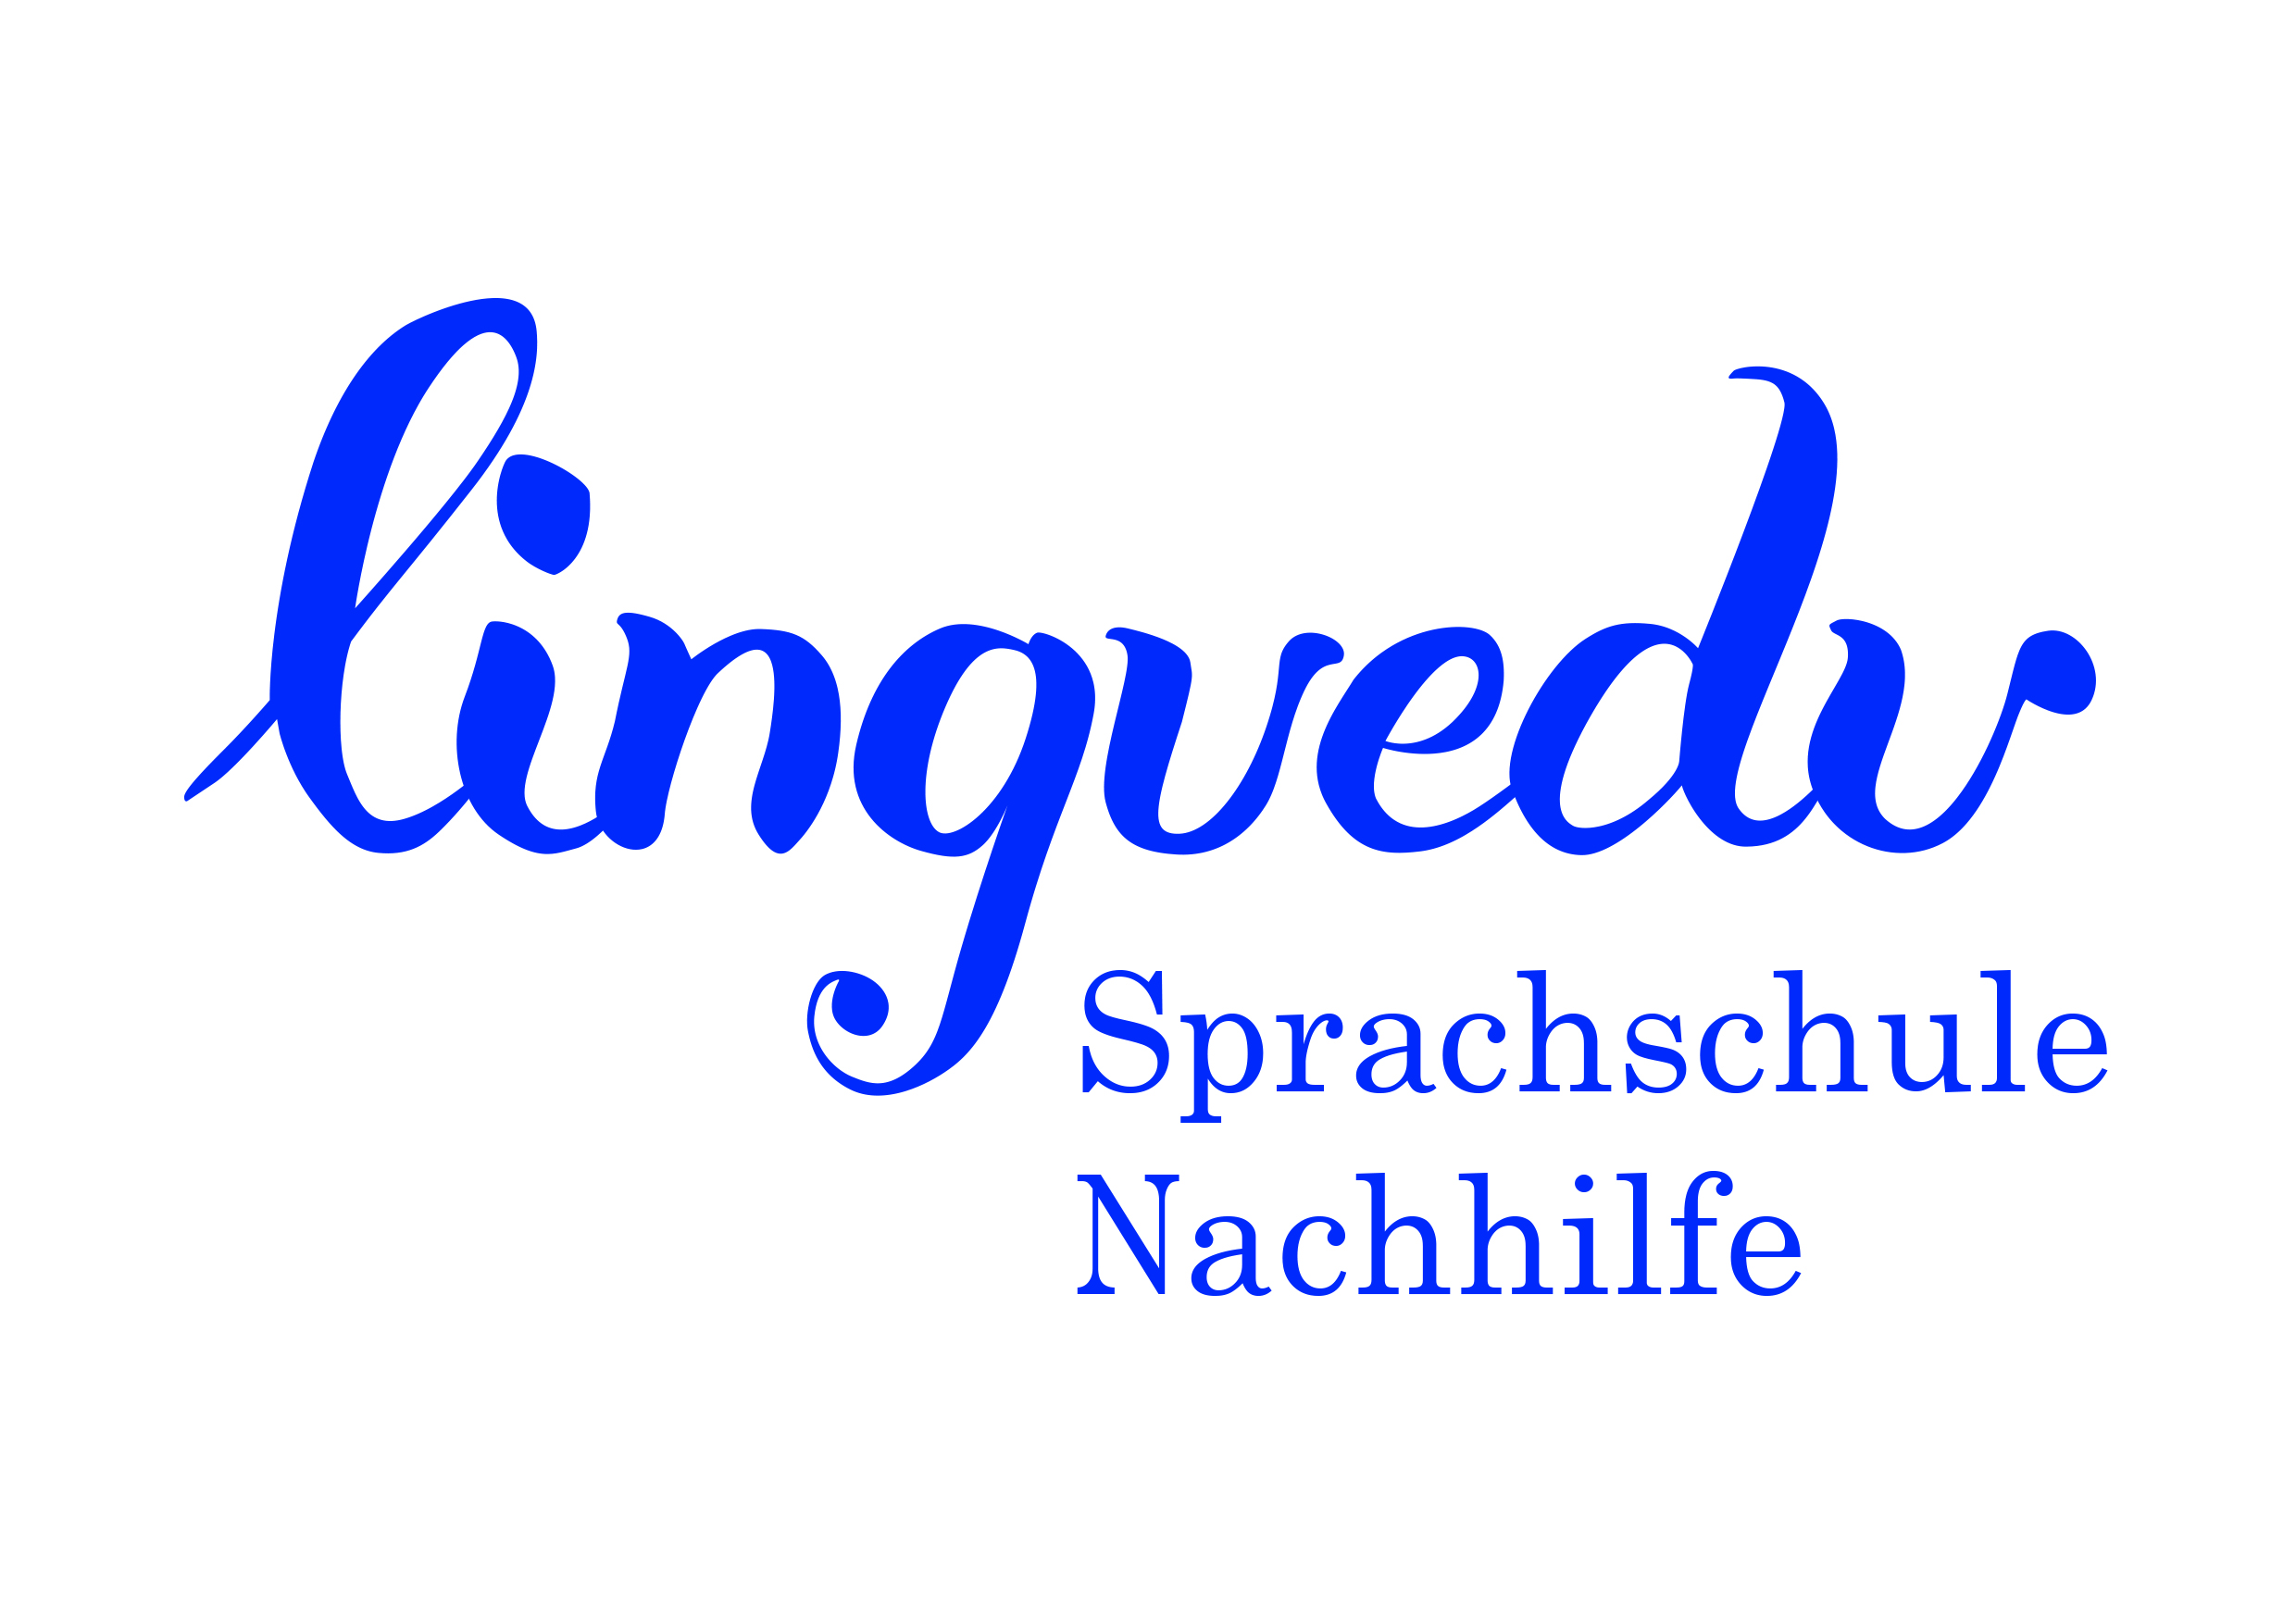 Das Logo meiner Sprachschule